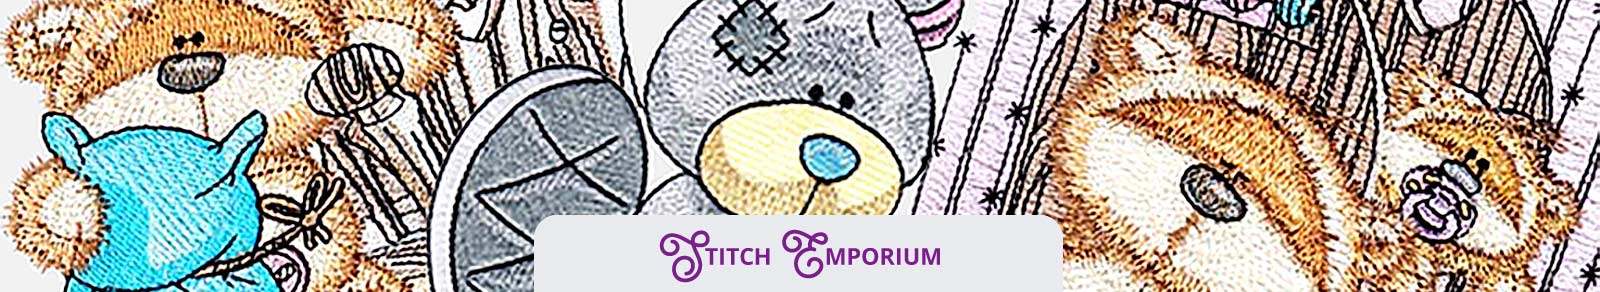 stitch emporium